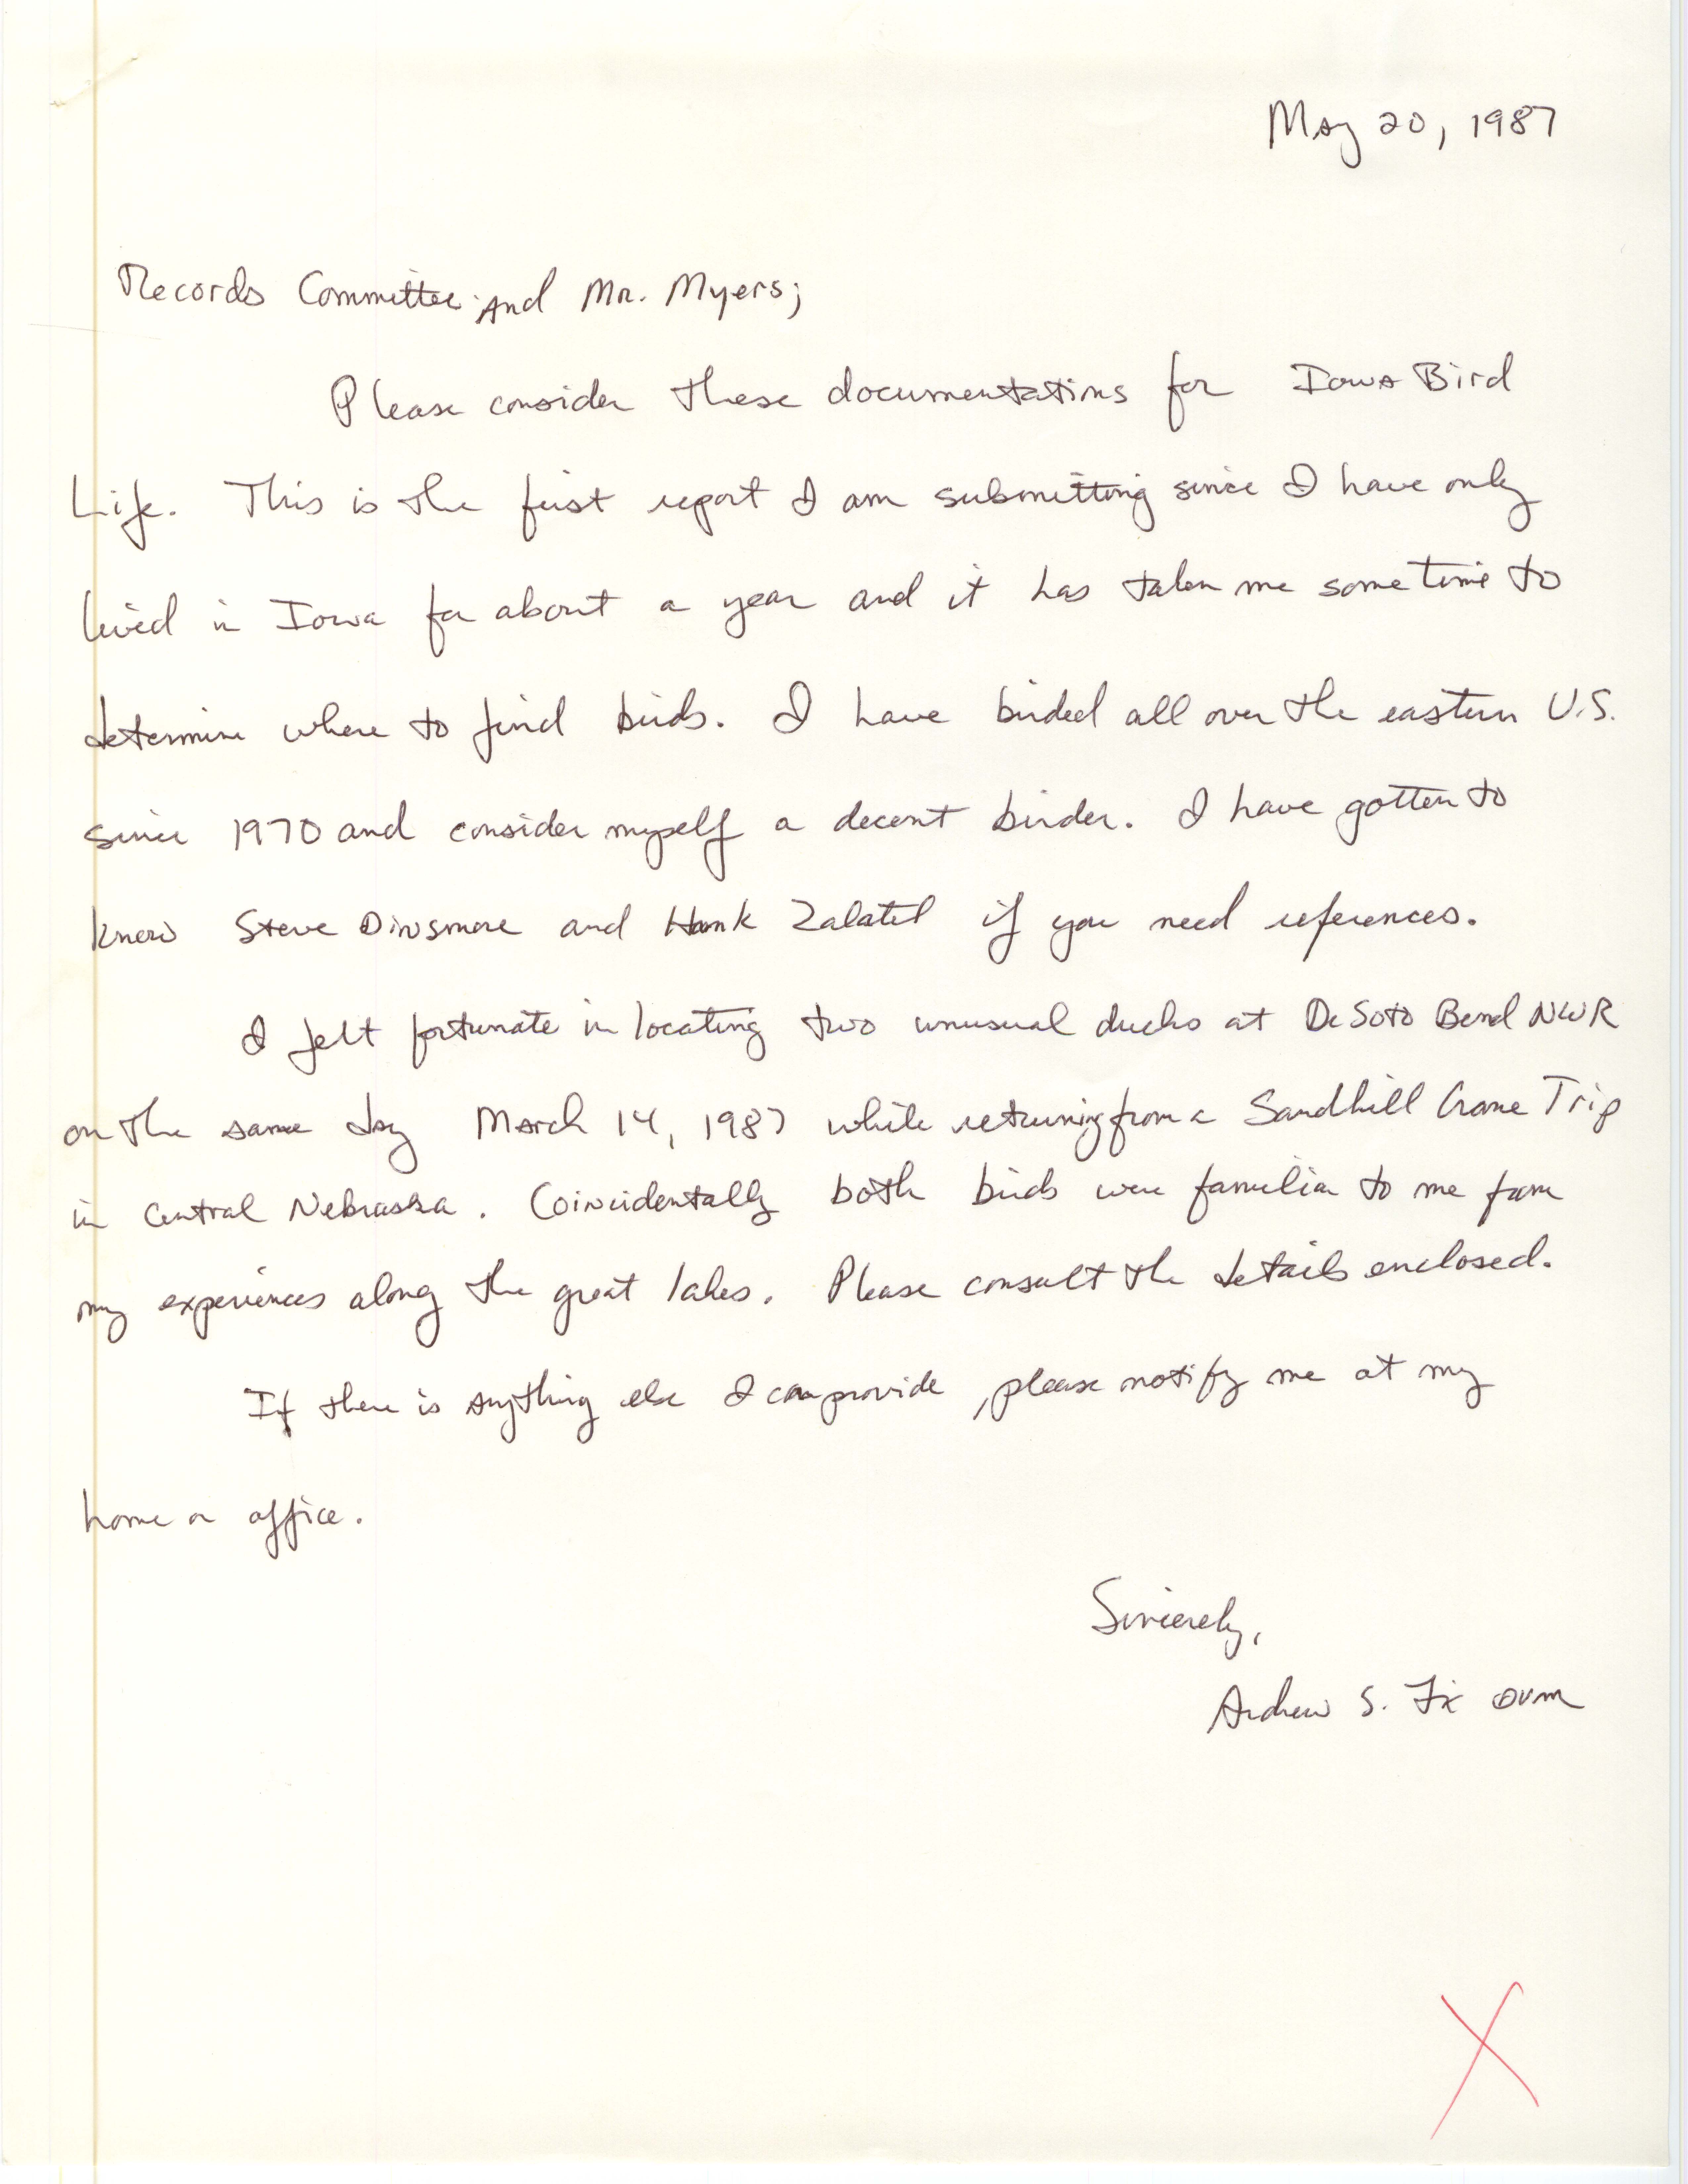 Andrew S. Fix letter to Robert K. Myers regarding bird sightings, May 20, 1987